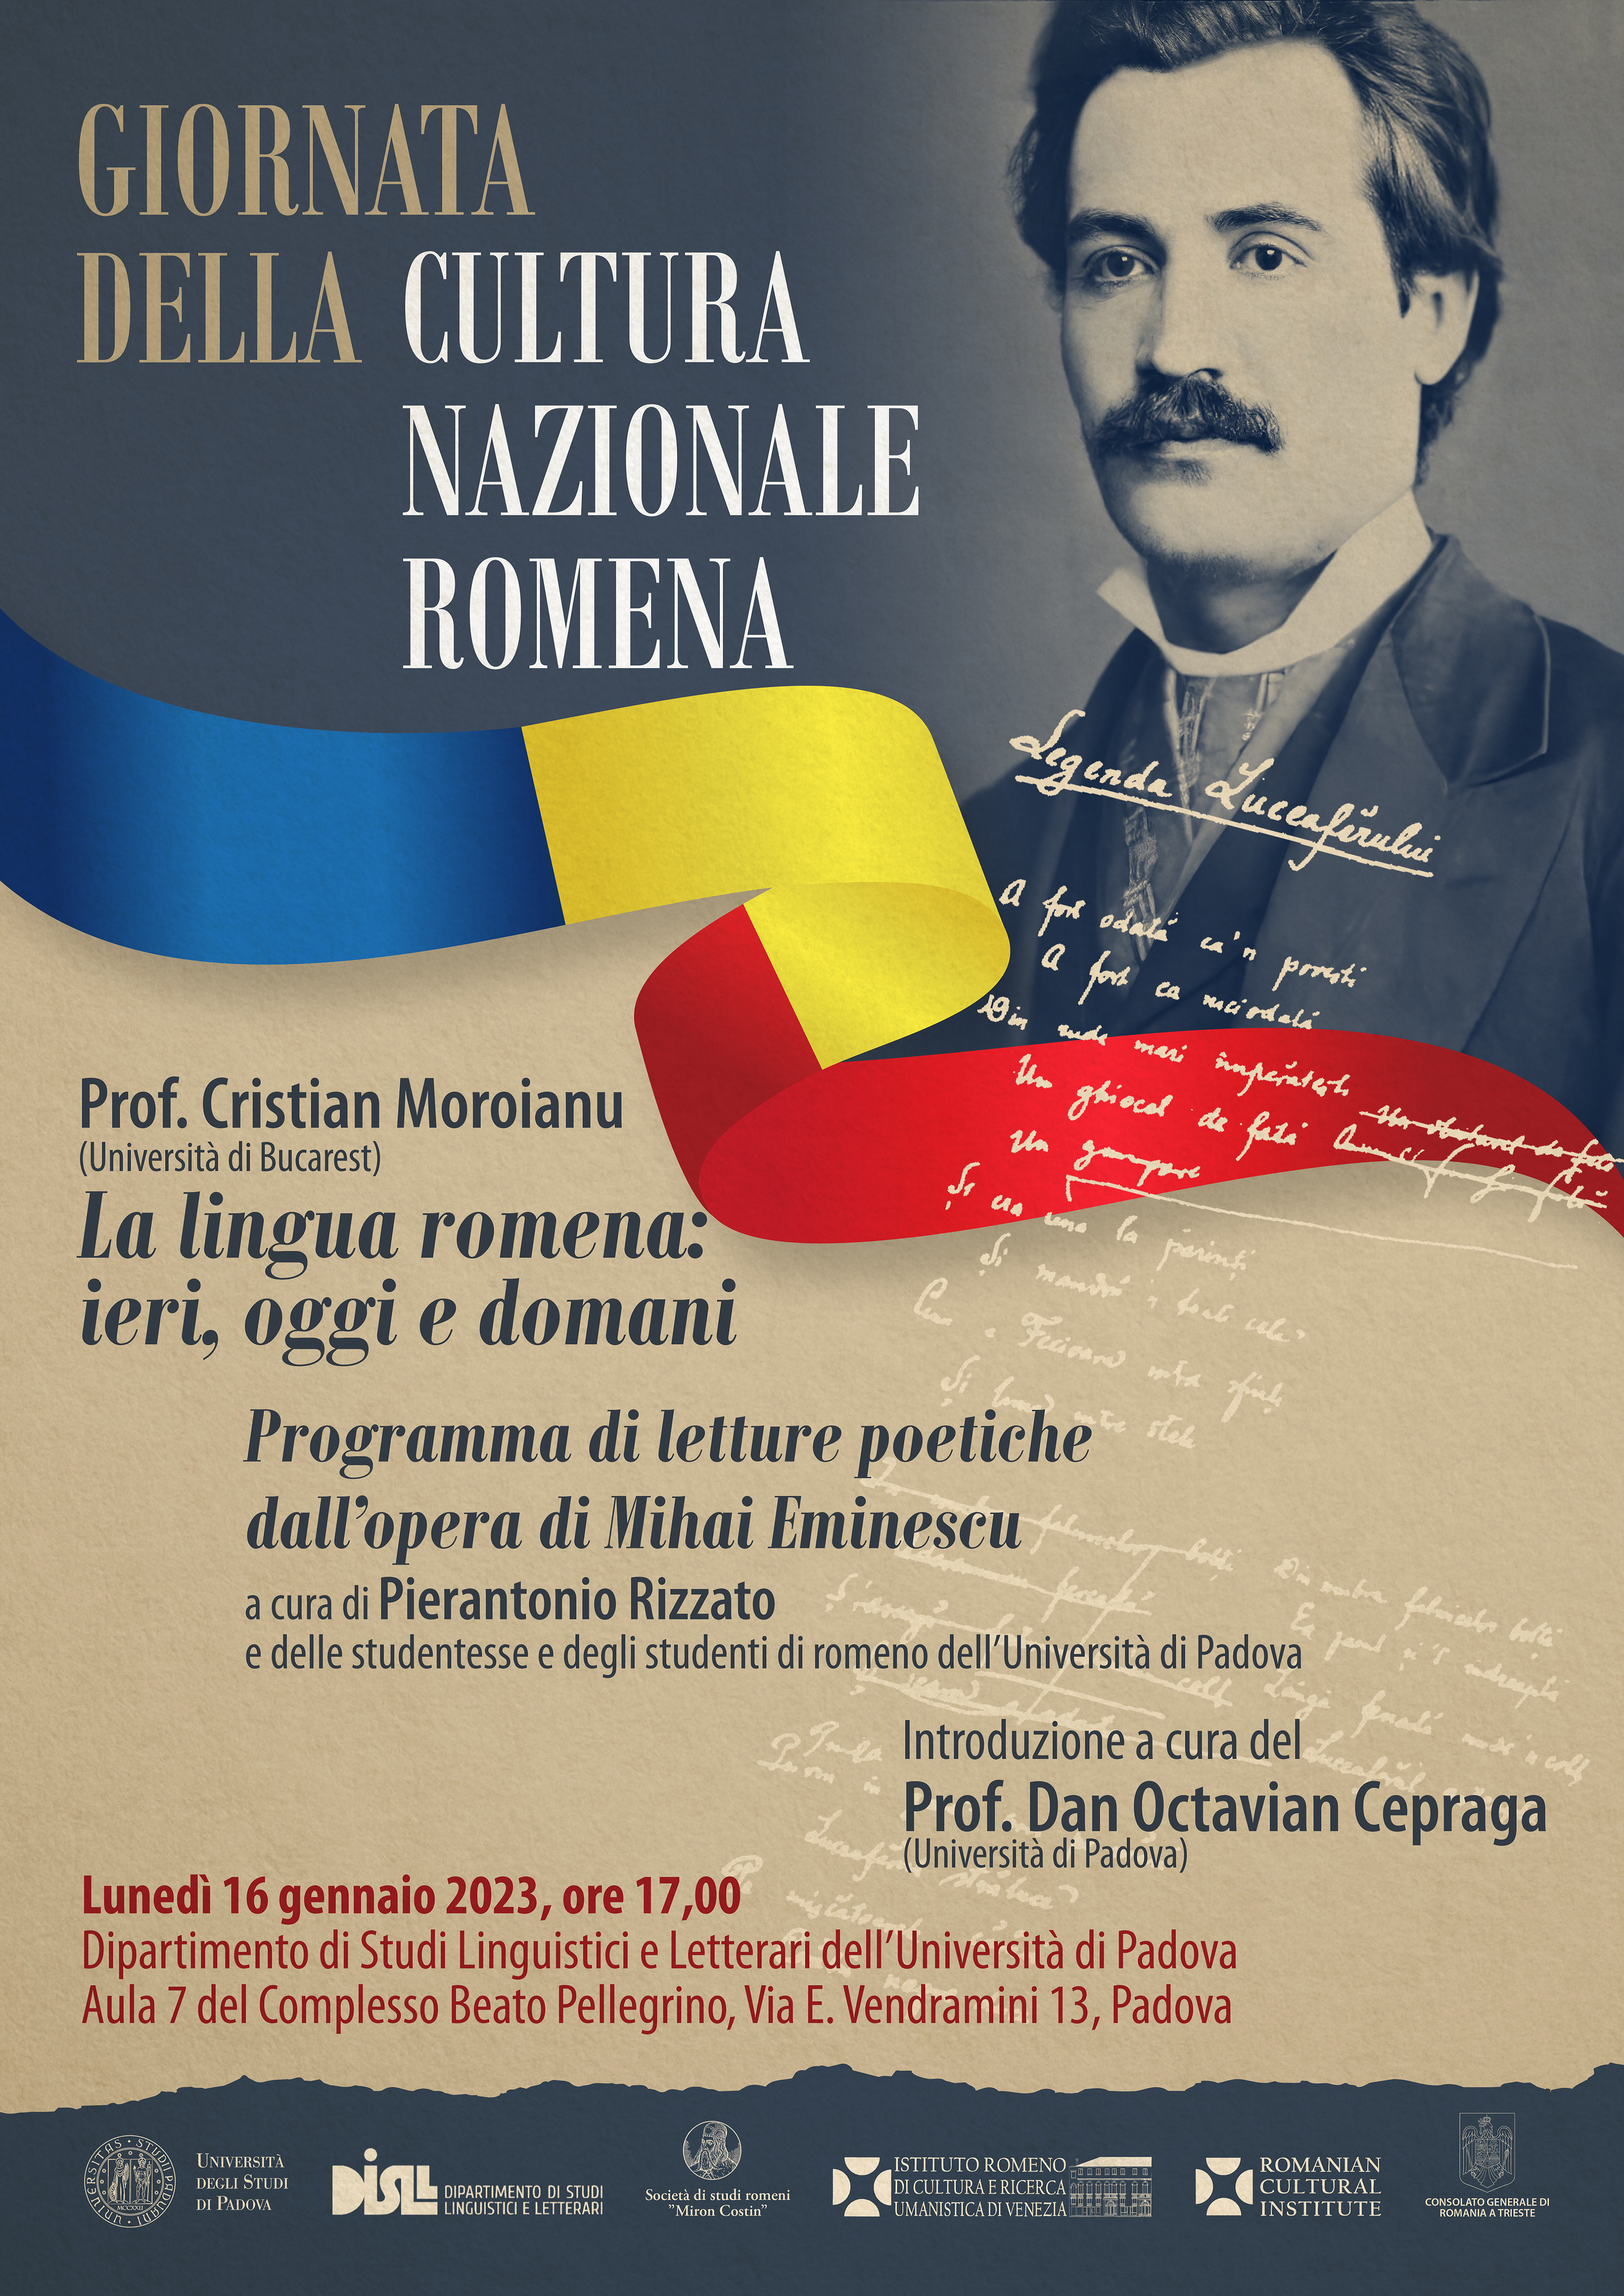 Allegato Locandina A3 Giornata della Cultura Nazionale Romena all’Università di Padova, lunedì 16 gennaio 2023.jpg